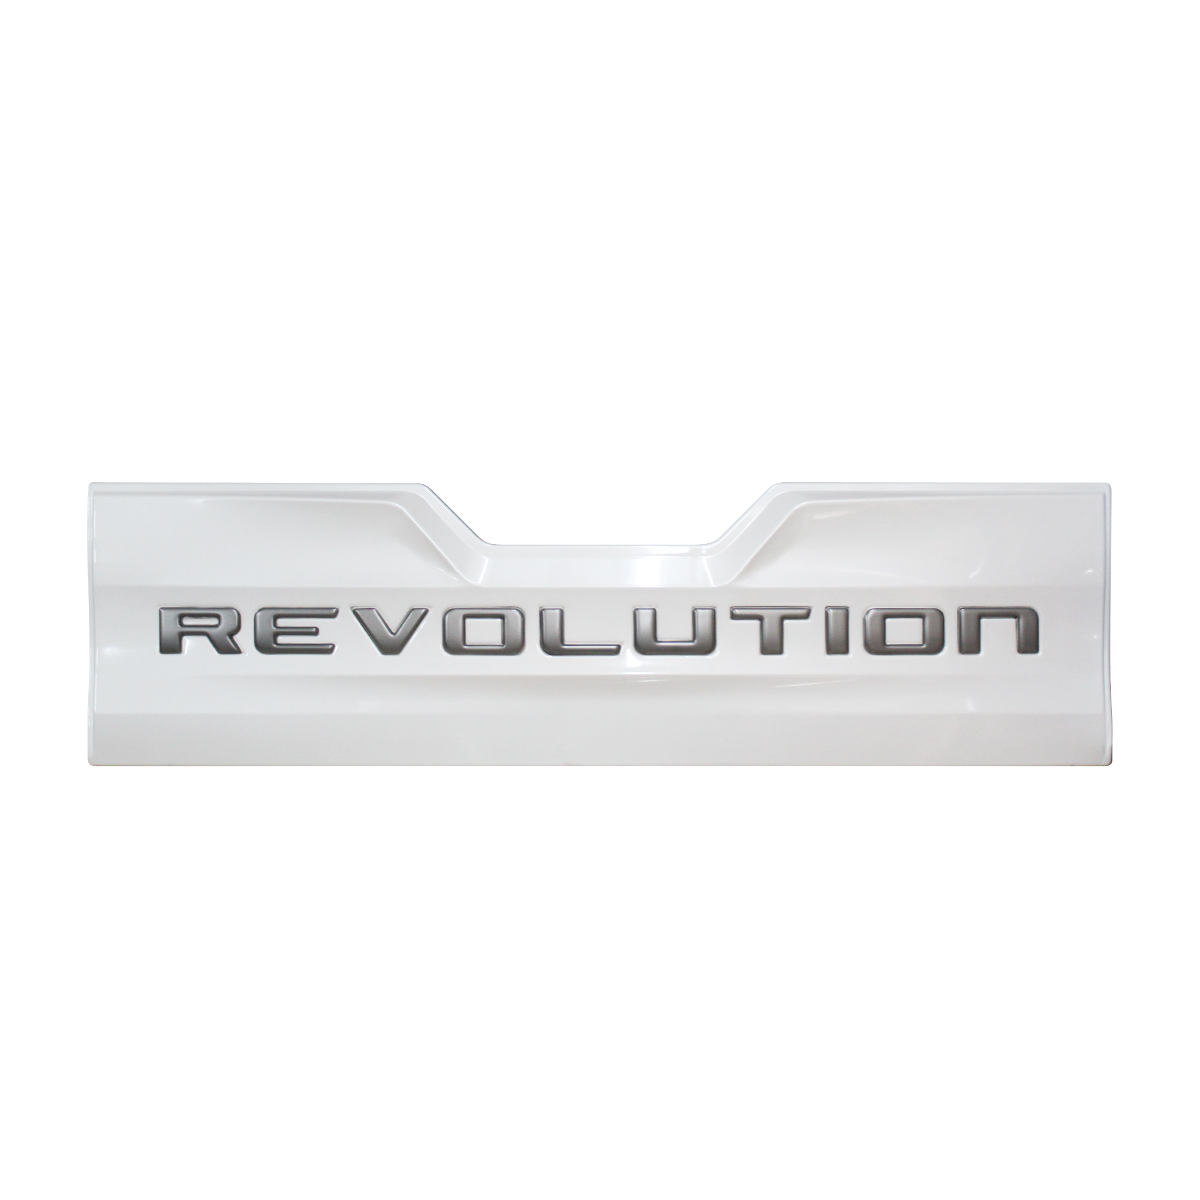 HILUX REVOLUTION WHITE TAILGATE BOARD